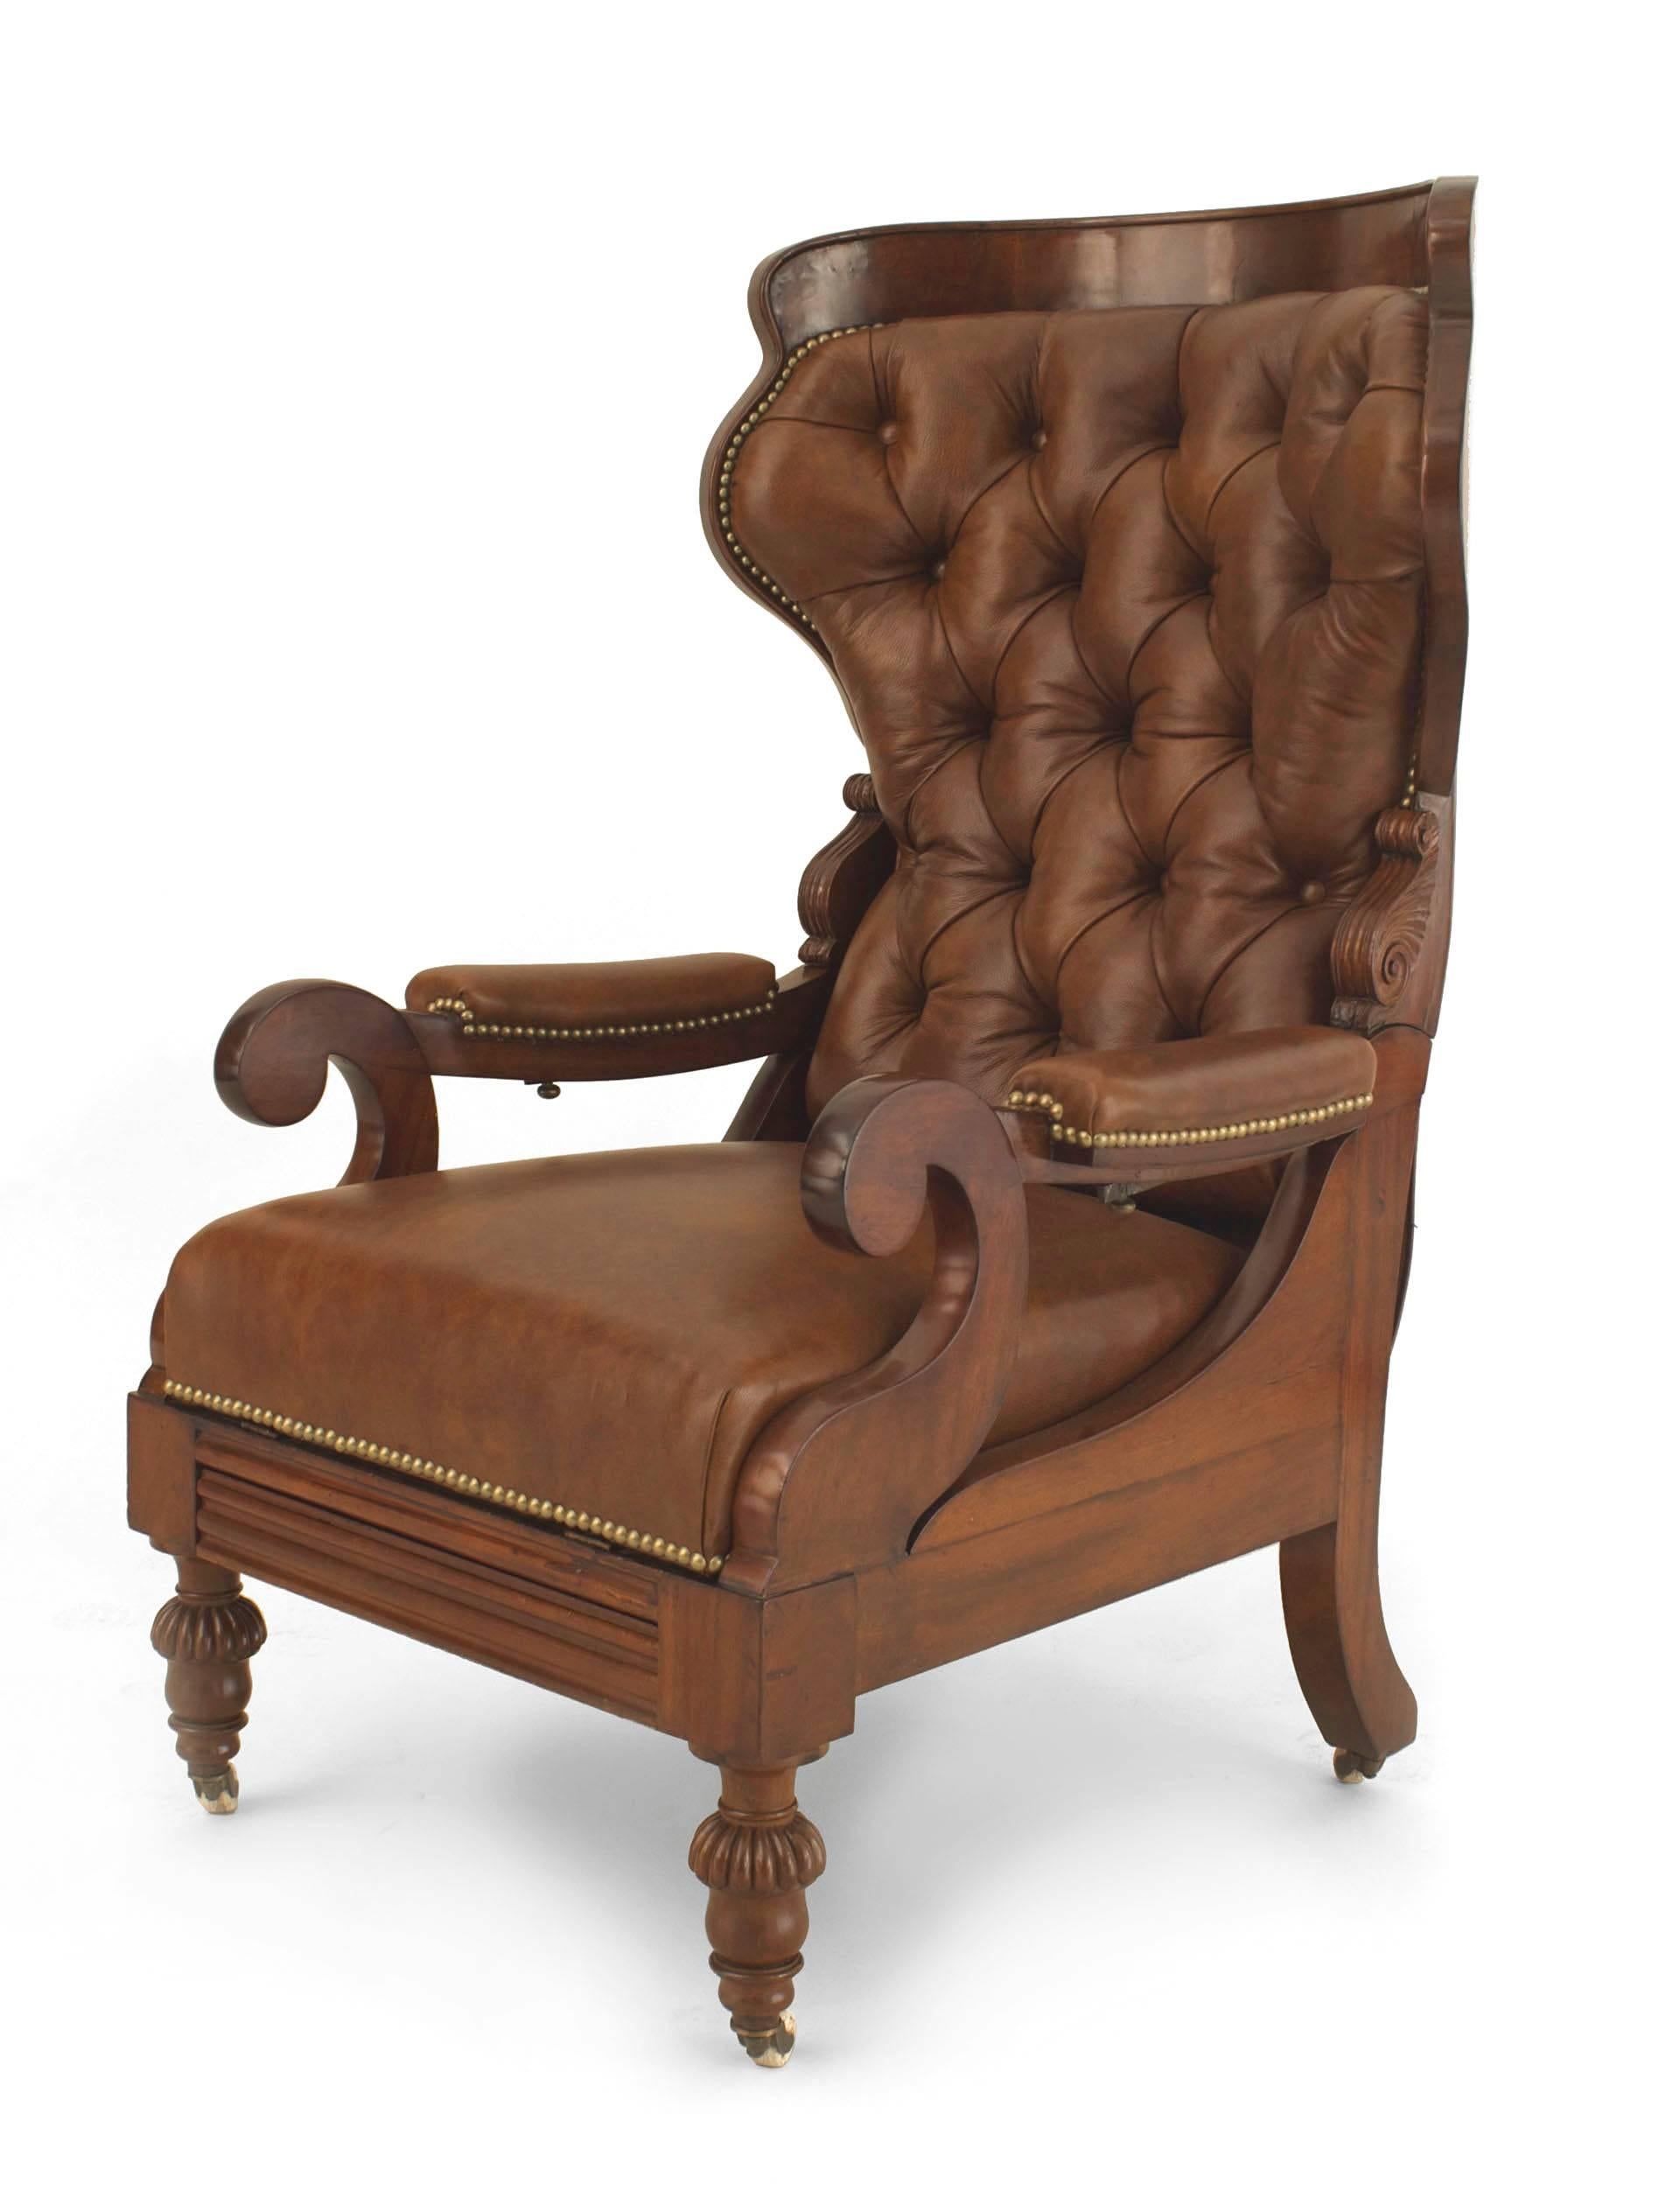 Fauteuil réglable inclinable en acajou, de style victorien anglais (2e quart du XIXe siècle), avec repose-pieds et garni de cuir brun, avec dossier rond touffeté et garniture de tête à clous.
